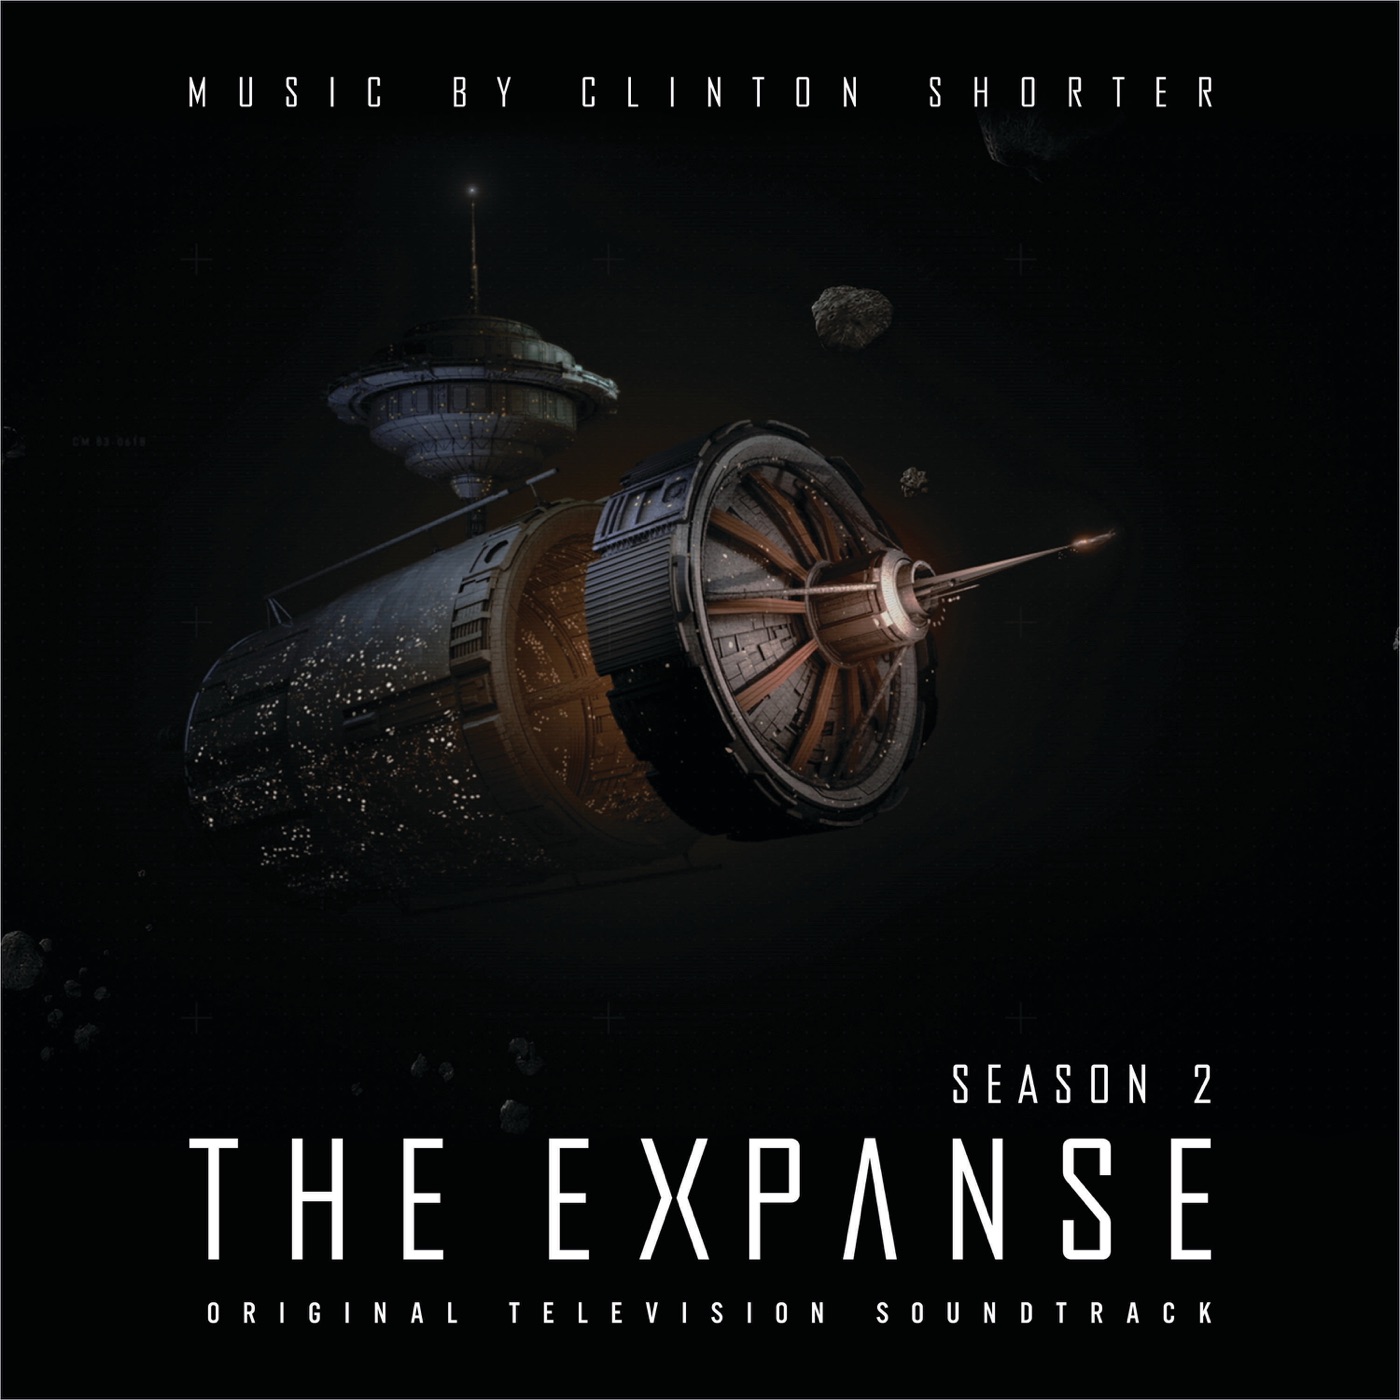 The Expanse Season 2 (Original Television Soundtrack) by Clinton Shorter